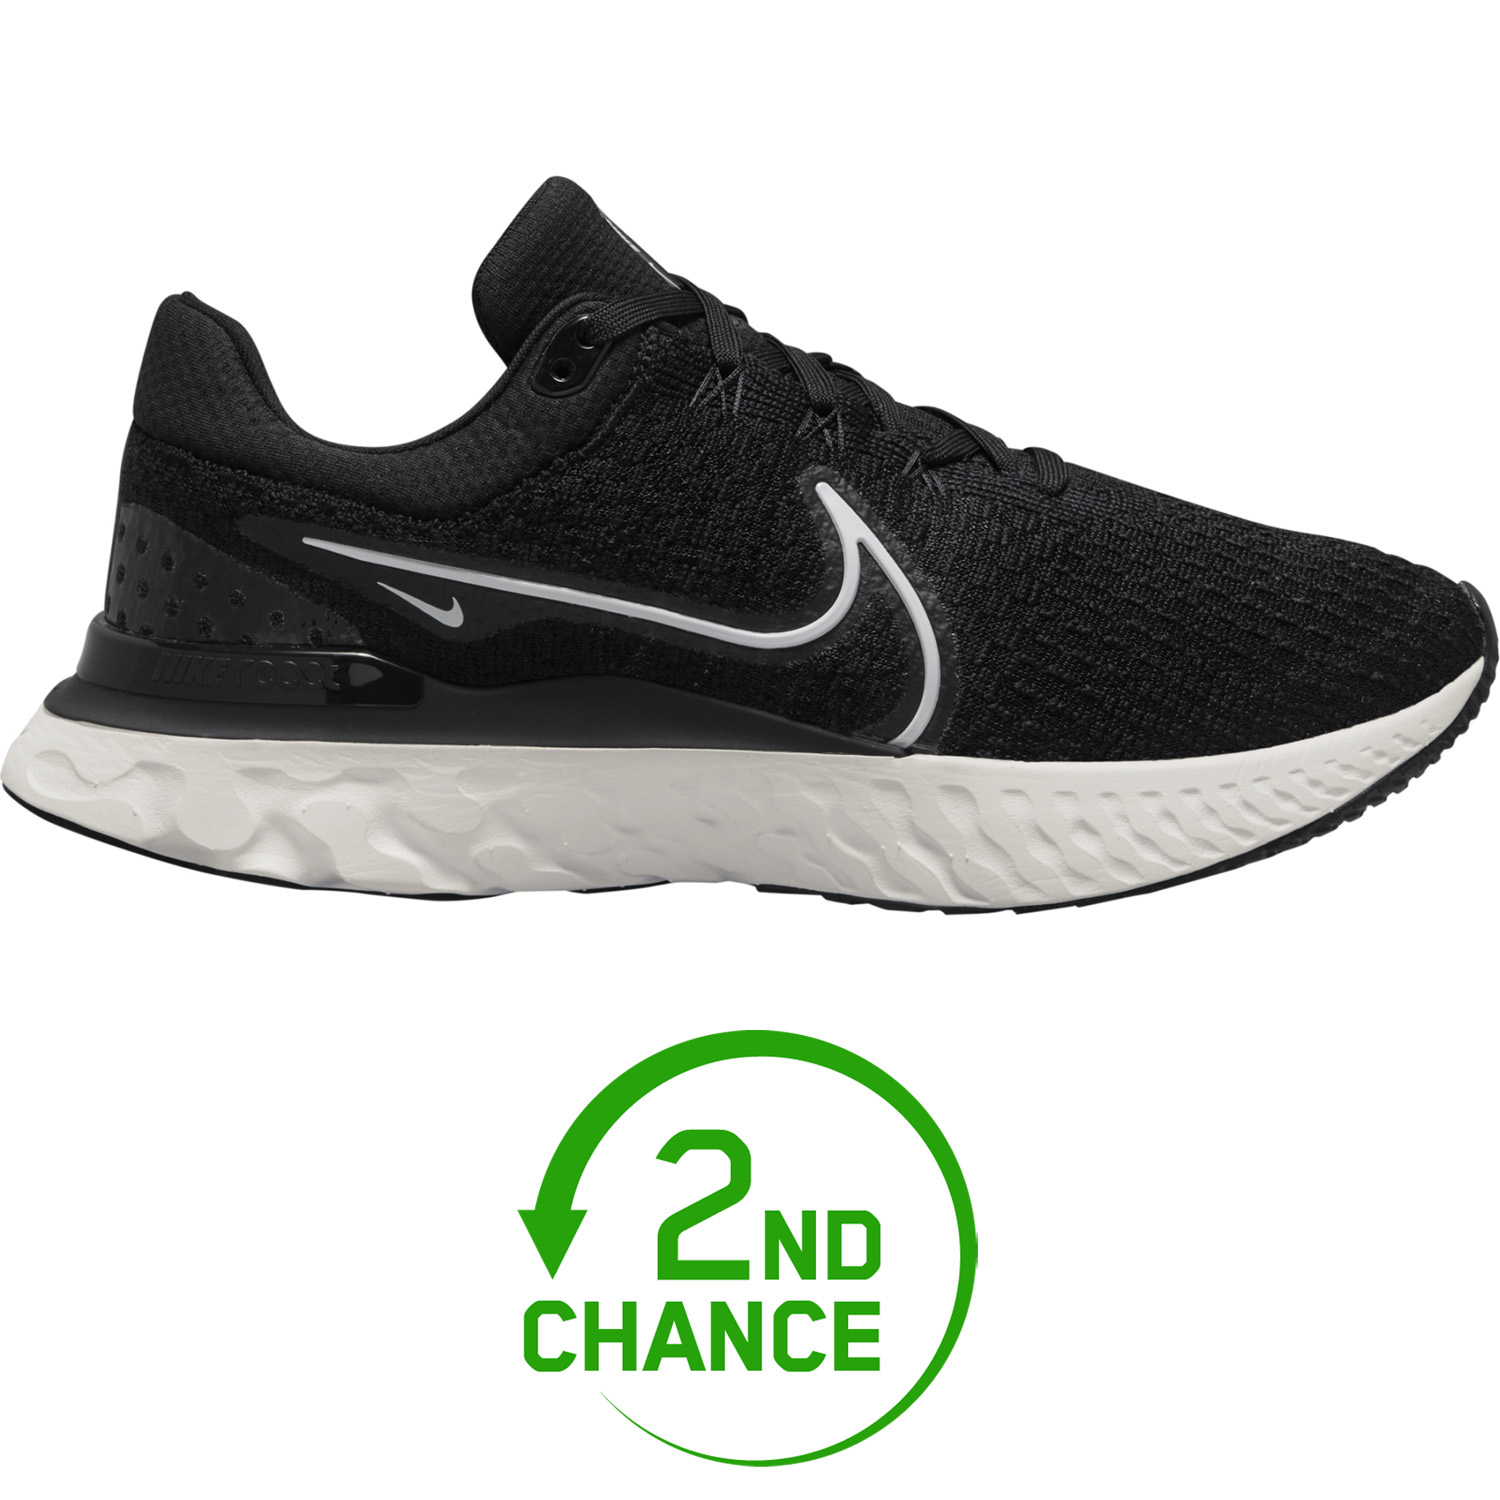 Immagine prodotto da Nike Scarpe da corsa Uomo - React Infinity Run Flyknit 3 - nero/bianco DH5392-001 - B-Stock